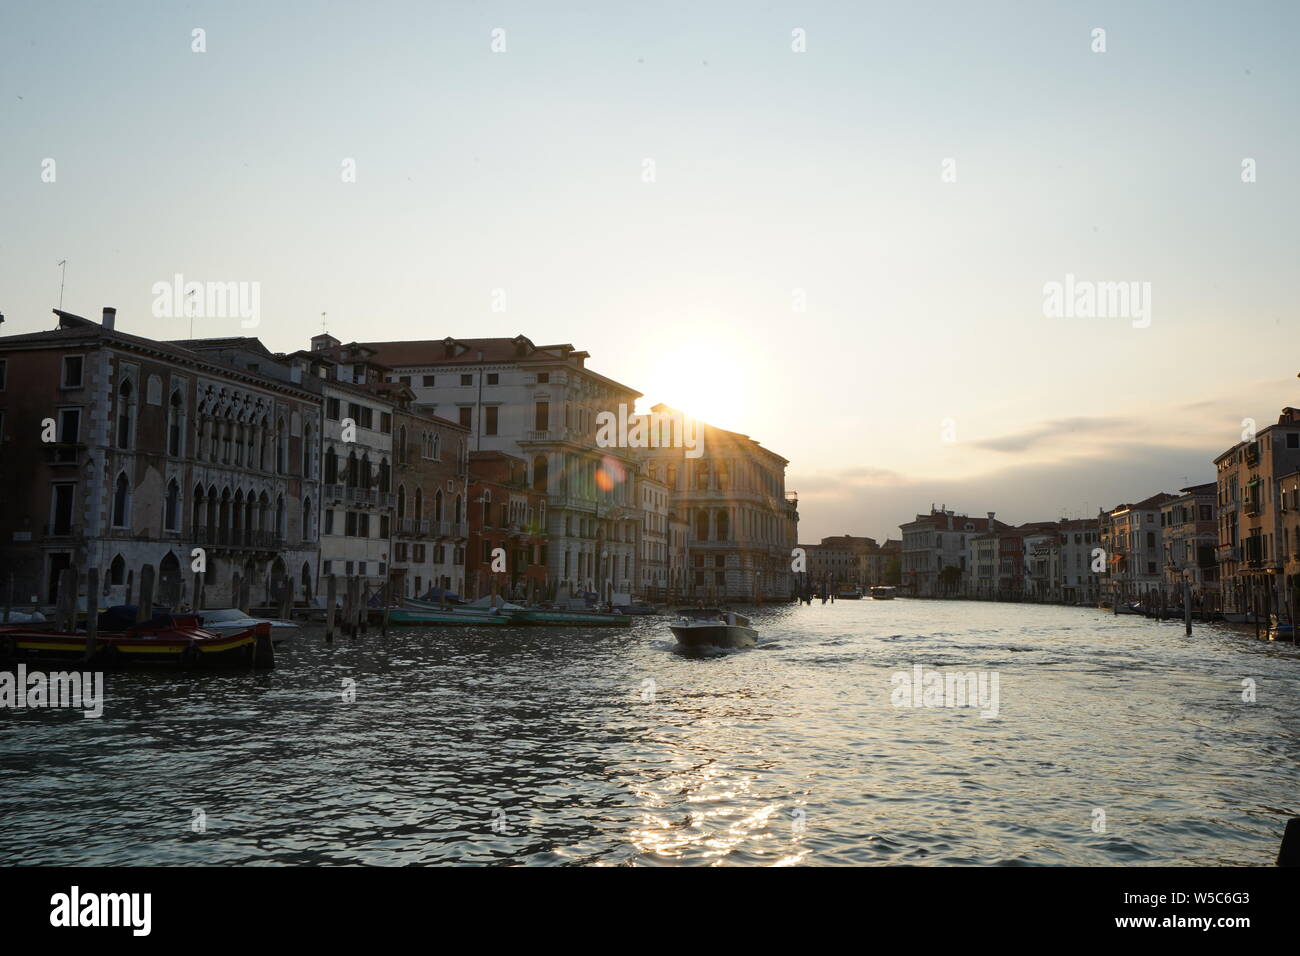 Venedig, Italien - Iconic italienischen Stadt an der Adria. Blick auf den Canal Grande. Eine unglaubliche Europäischen Urlaubsziel. Stockfoto